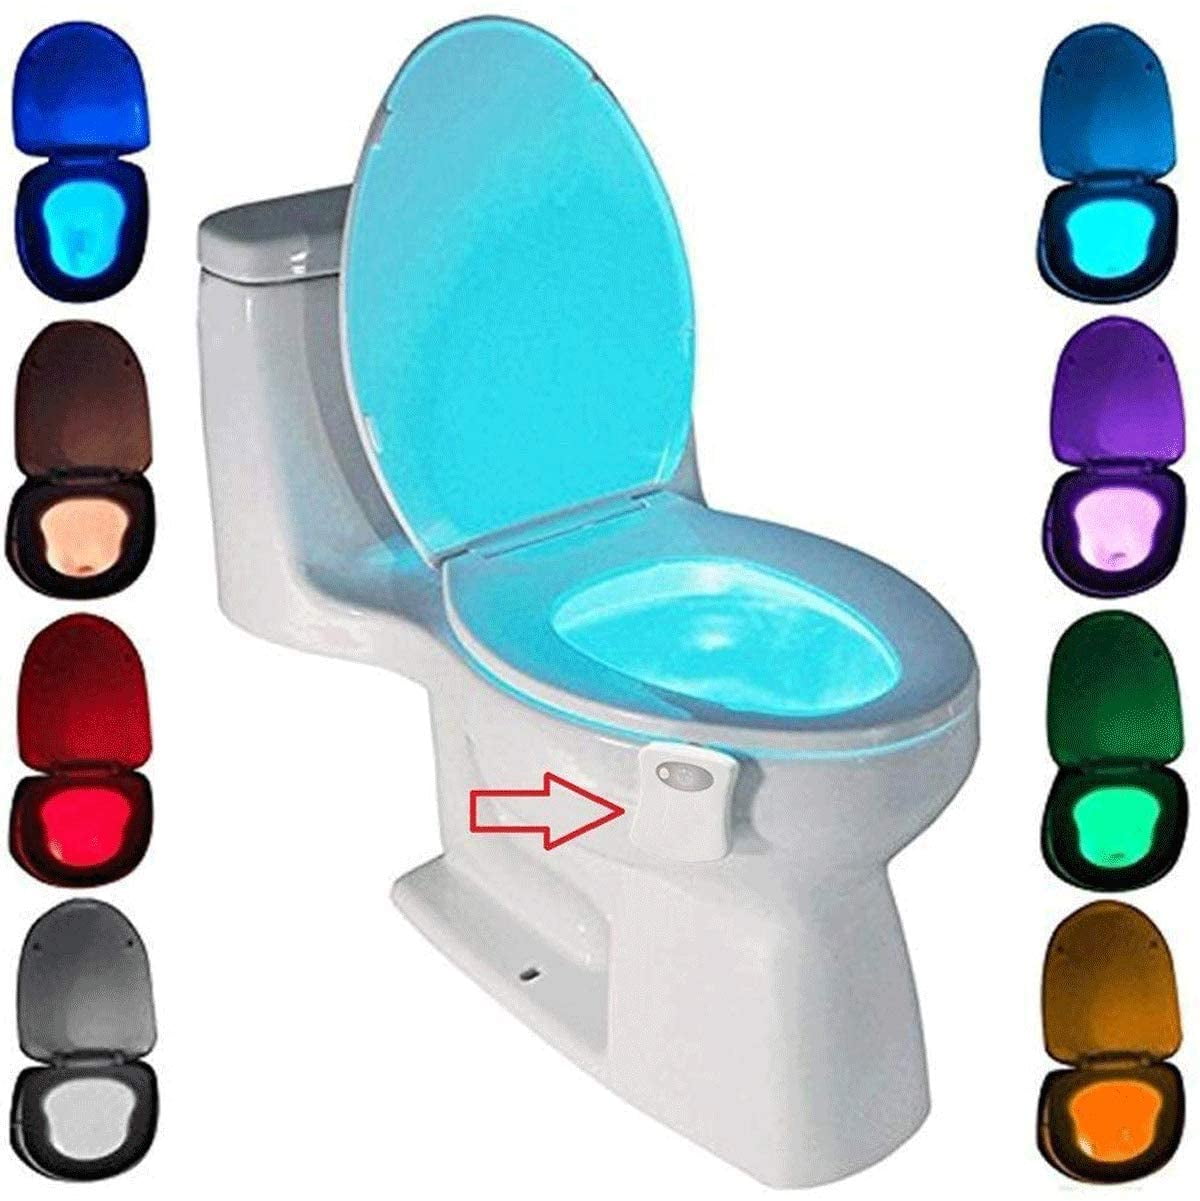 vrijdag Verbeteren Verpersoonlijking Toilet Lamp, Led Nightlight For Wc Bathroom Sensor Detector 8 Color Change  Lighting - Walmart.com